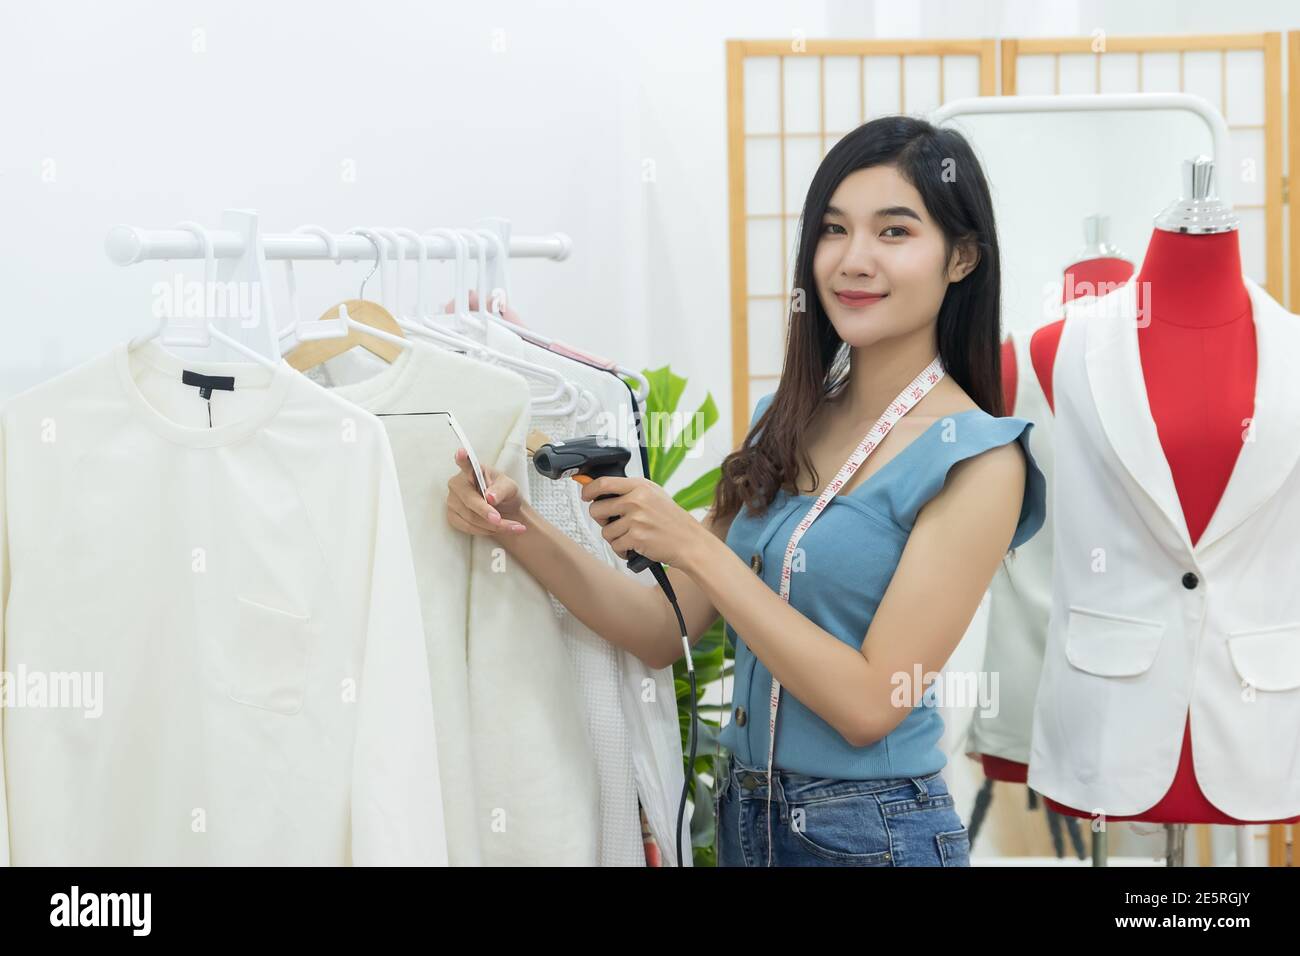 Small Business Owner Konzept. Junge glücklich zuversichtlich Designer asiatische Frau mit Band Maß am Hals verwenden Sie Handheld-Barcode-Scanner auf Kleidung zu schießen Stockfoto